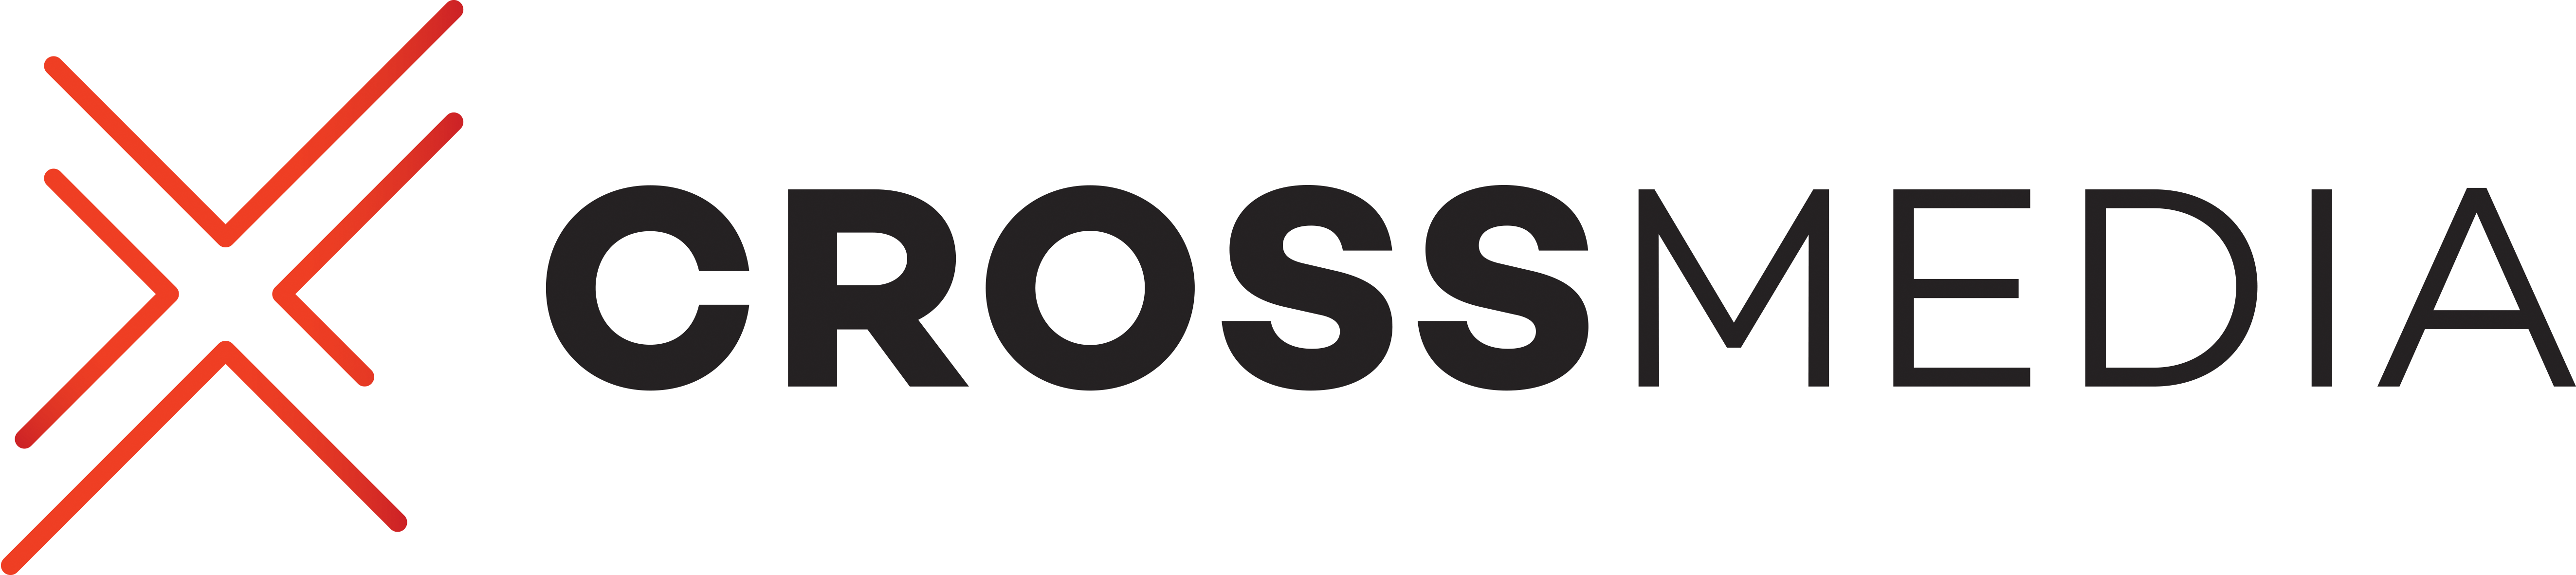 cross media logo